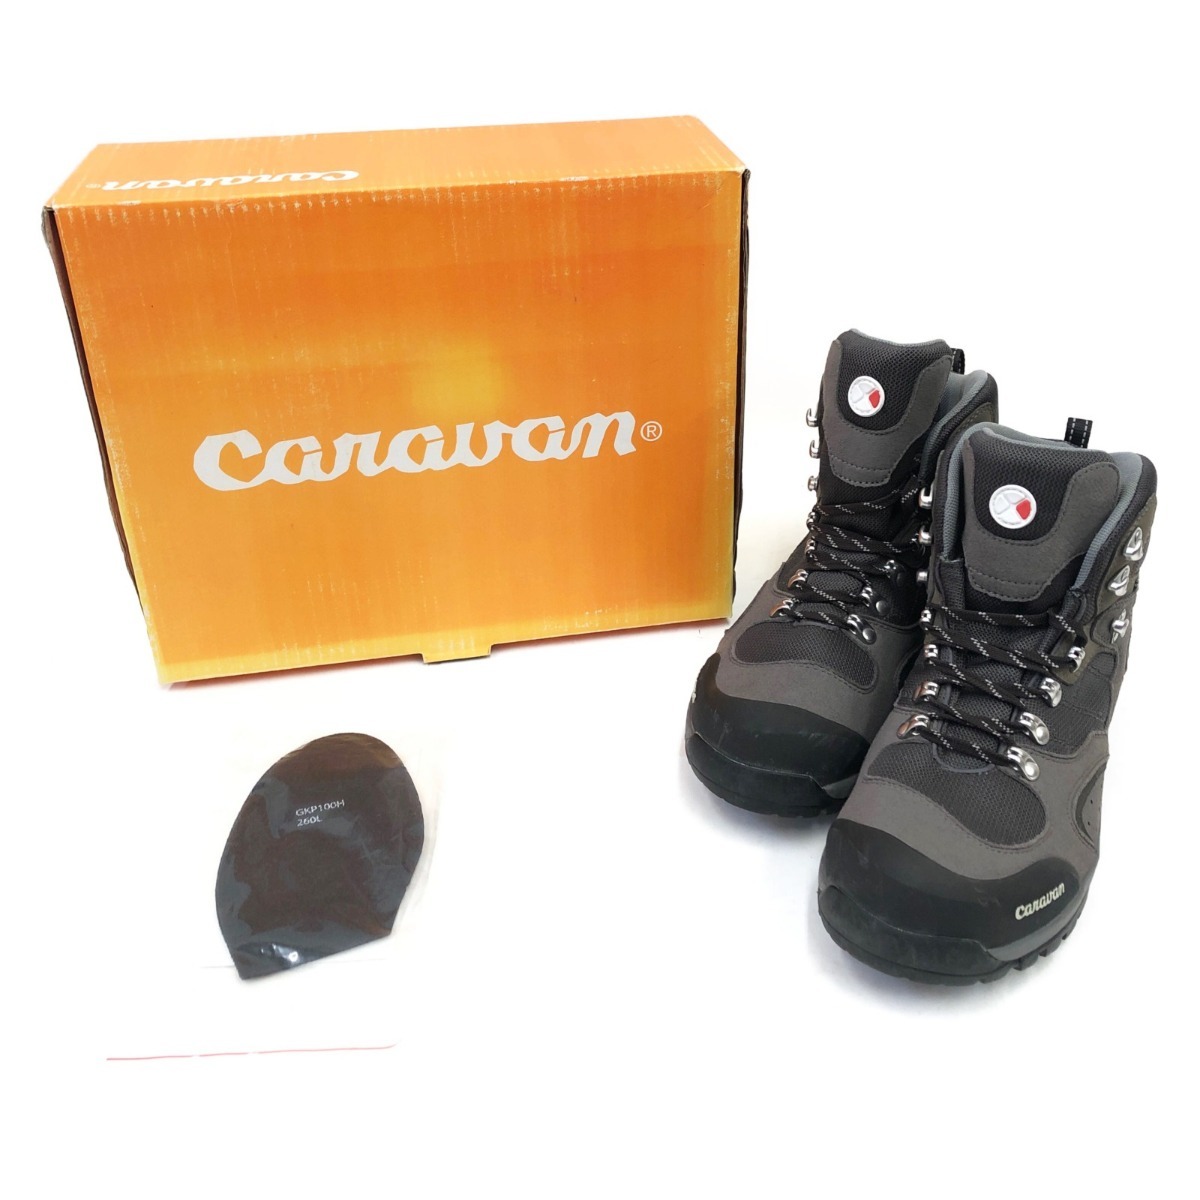 〇〇 CARAVAN キャラバン 登山靴 トレッキングシューズ 0010106 グレー やや傷や汚れあり